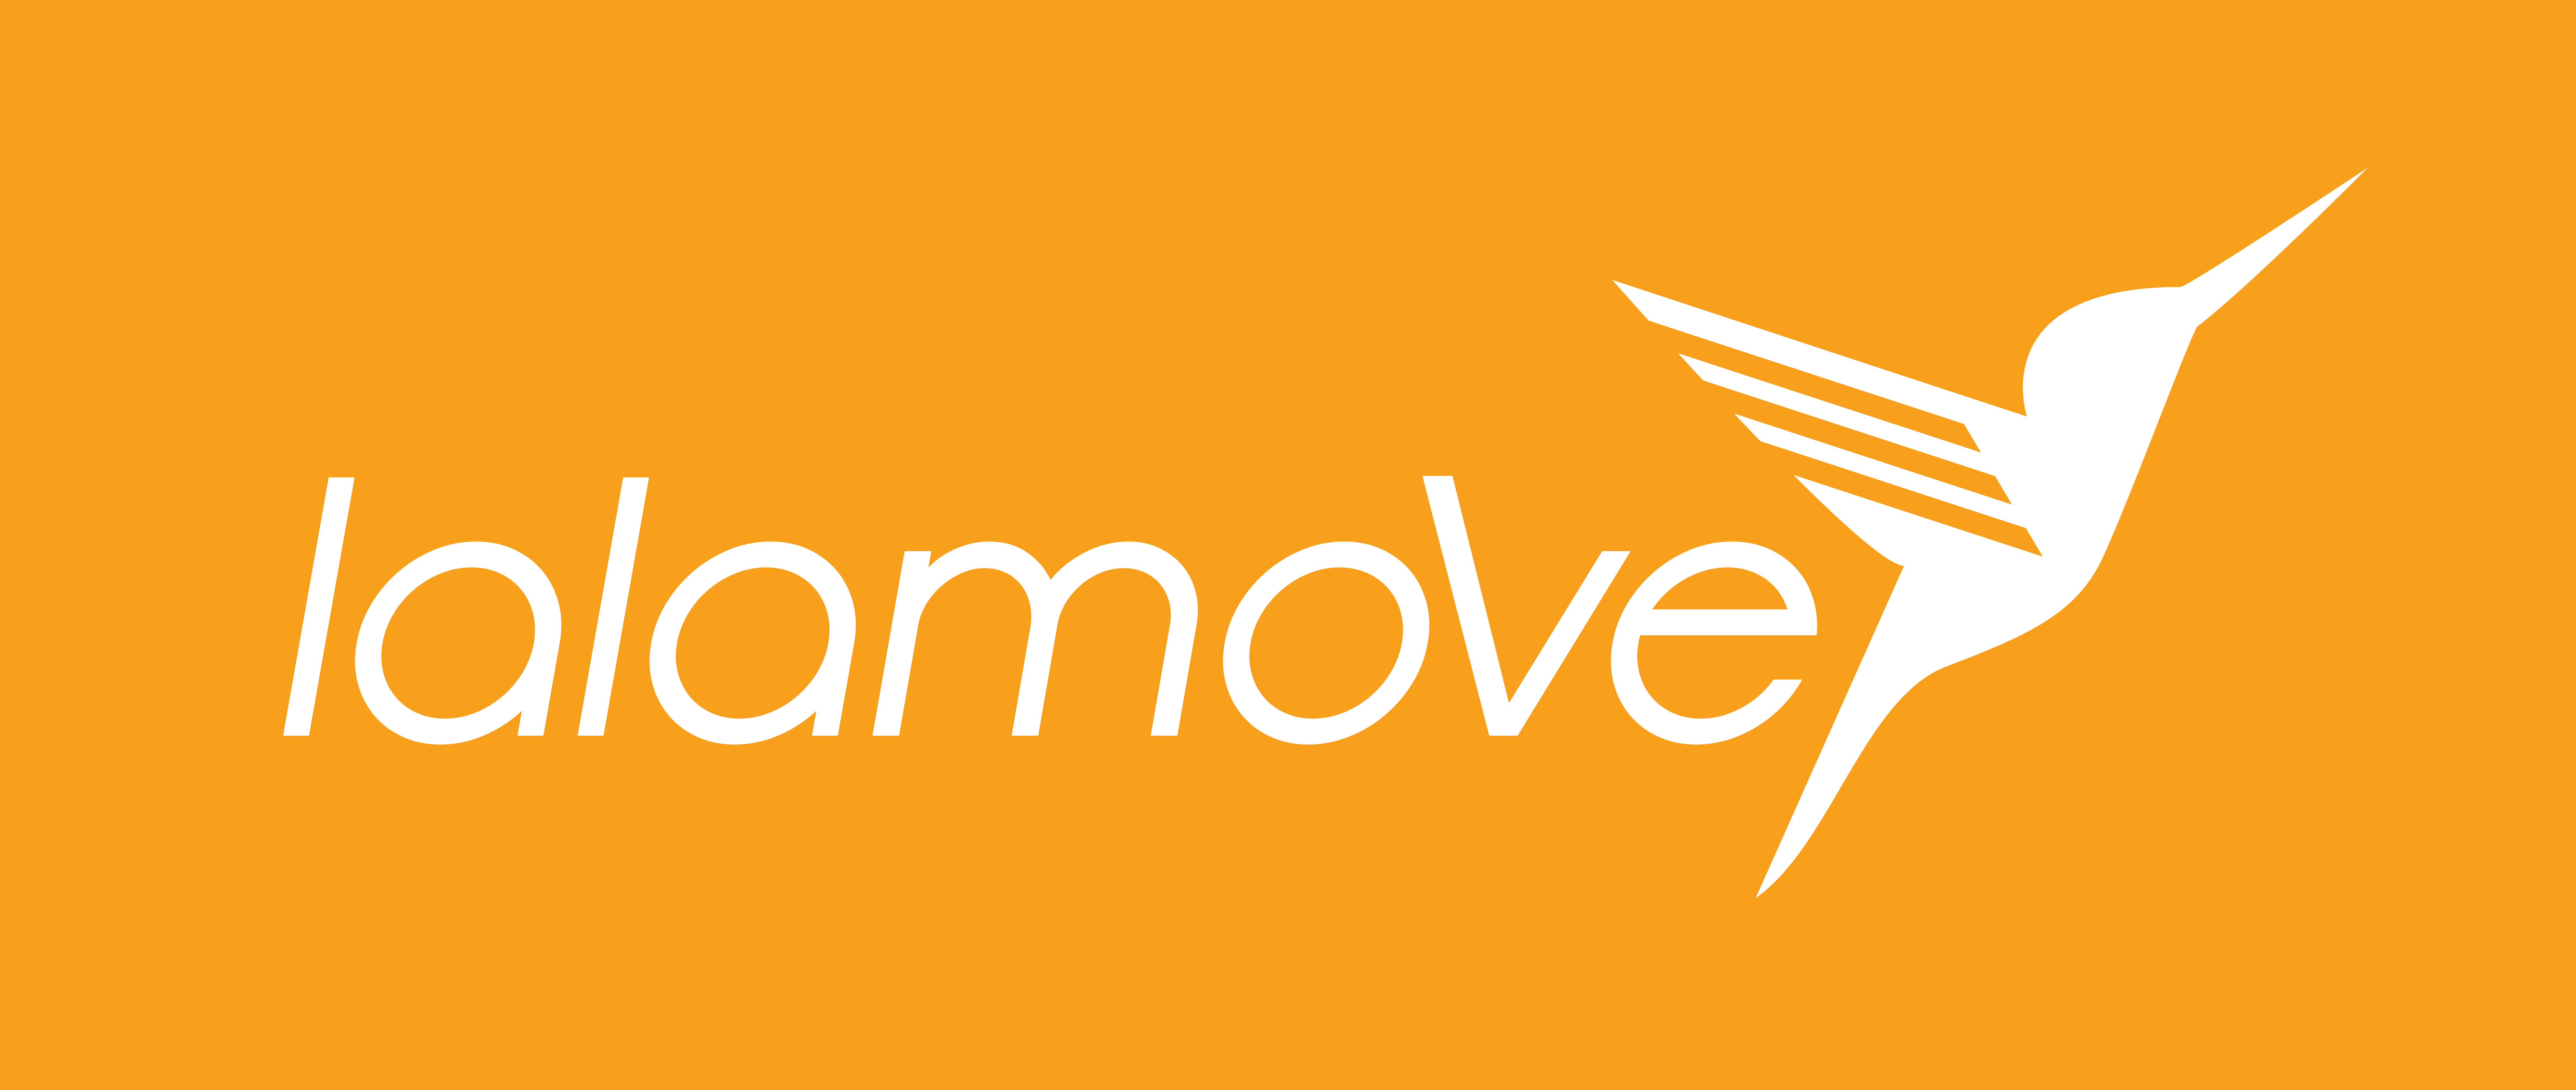 Lalamove - EasyVan app logo